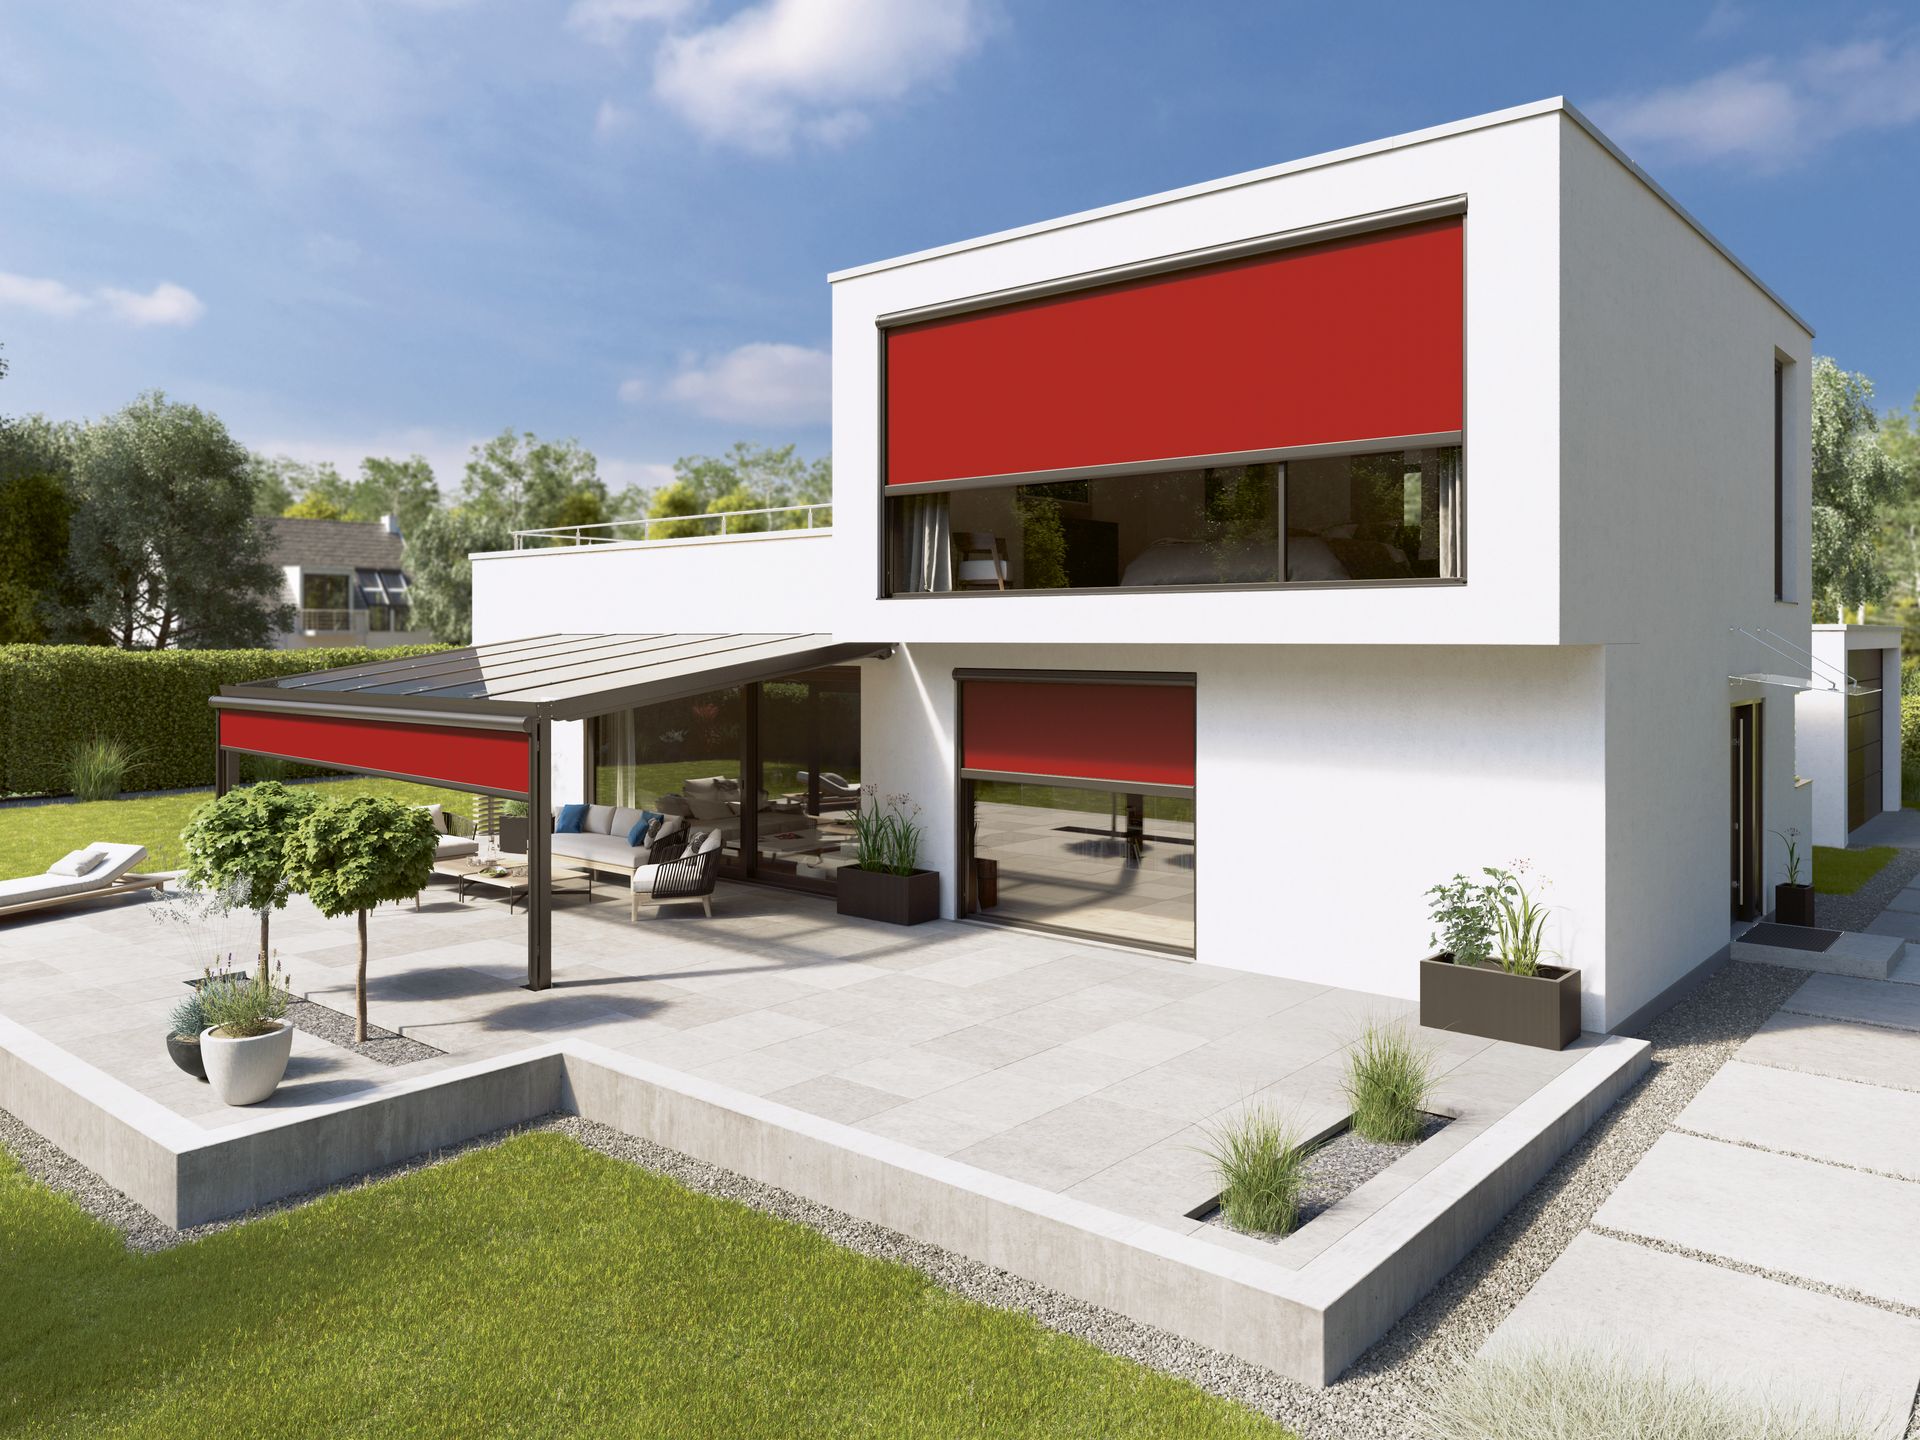 BAFA Fördermittel für Wohngebäude – Fenster, Außentüren und Sonnenschutz